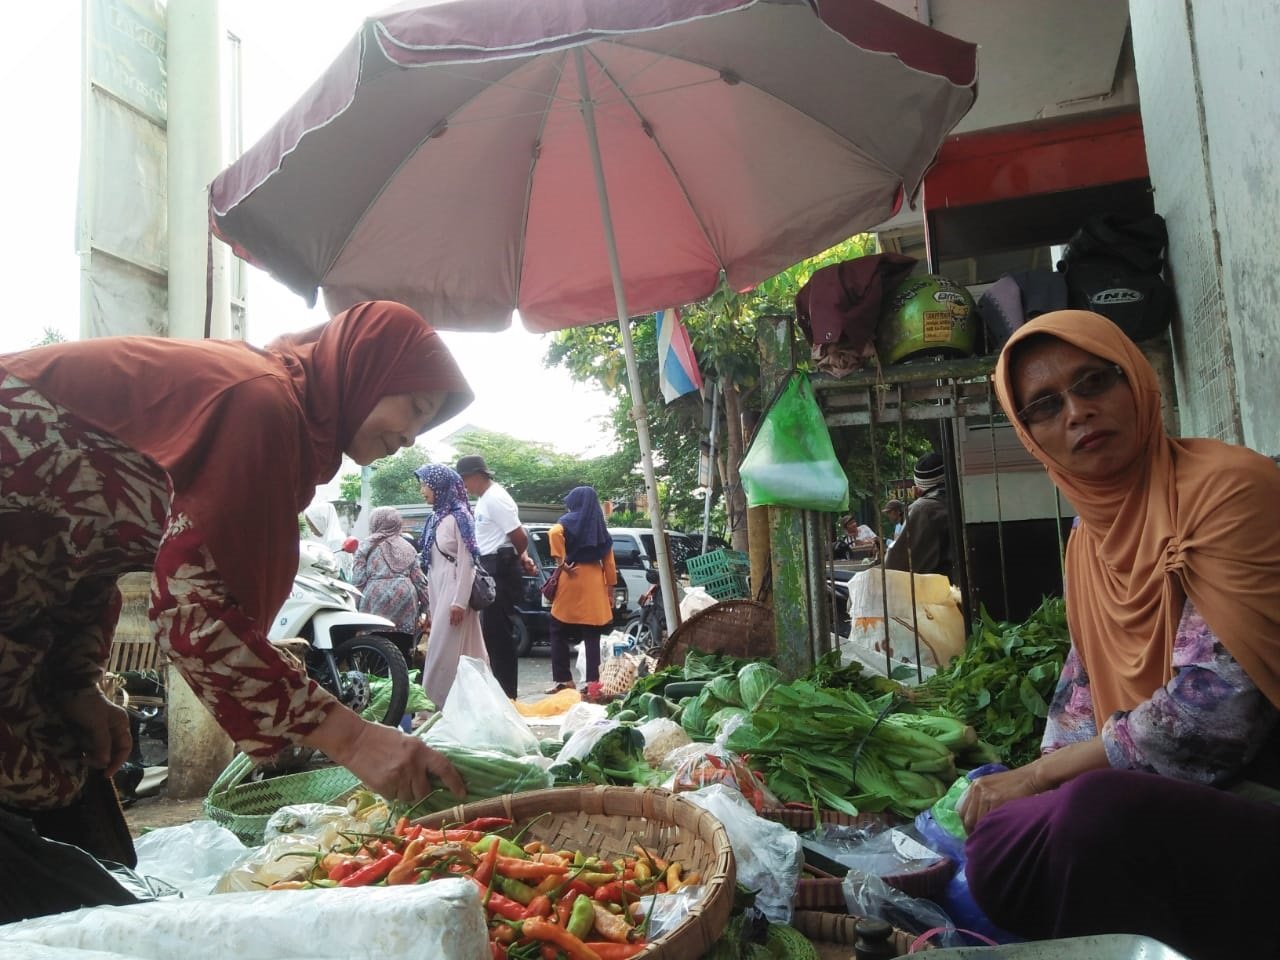 MELAYANI. Salah satu pedagang sayur di Pasar Kliwon Rejo Amertani Temanggung sedang melayani pembeli. (foto:setyo wuwuh/temanggung ekspres)